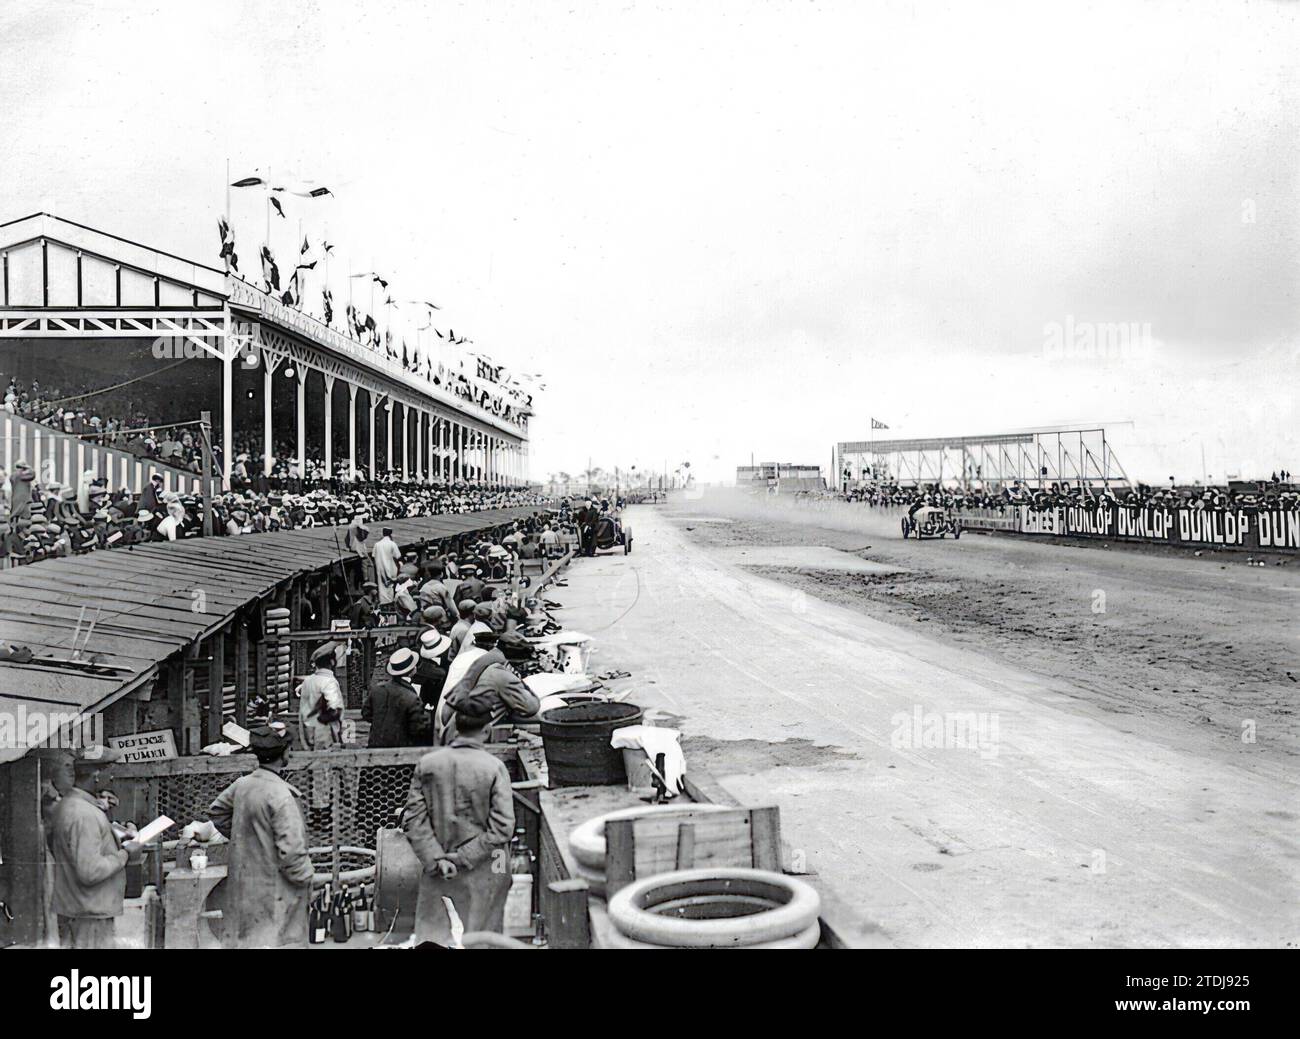 Dieppe (Francia), julio de 1908. La carrera de automóviles 'Grand Prix'. En la fotografía vemos la llegada a la línea de meta del coche que ganó el primer premio. Crédito: Álbum / Archivo ABC / Charles Delius Foto de stock